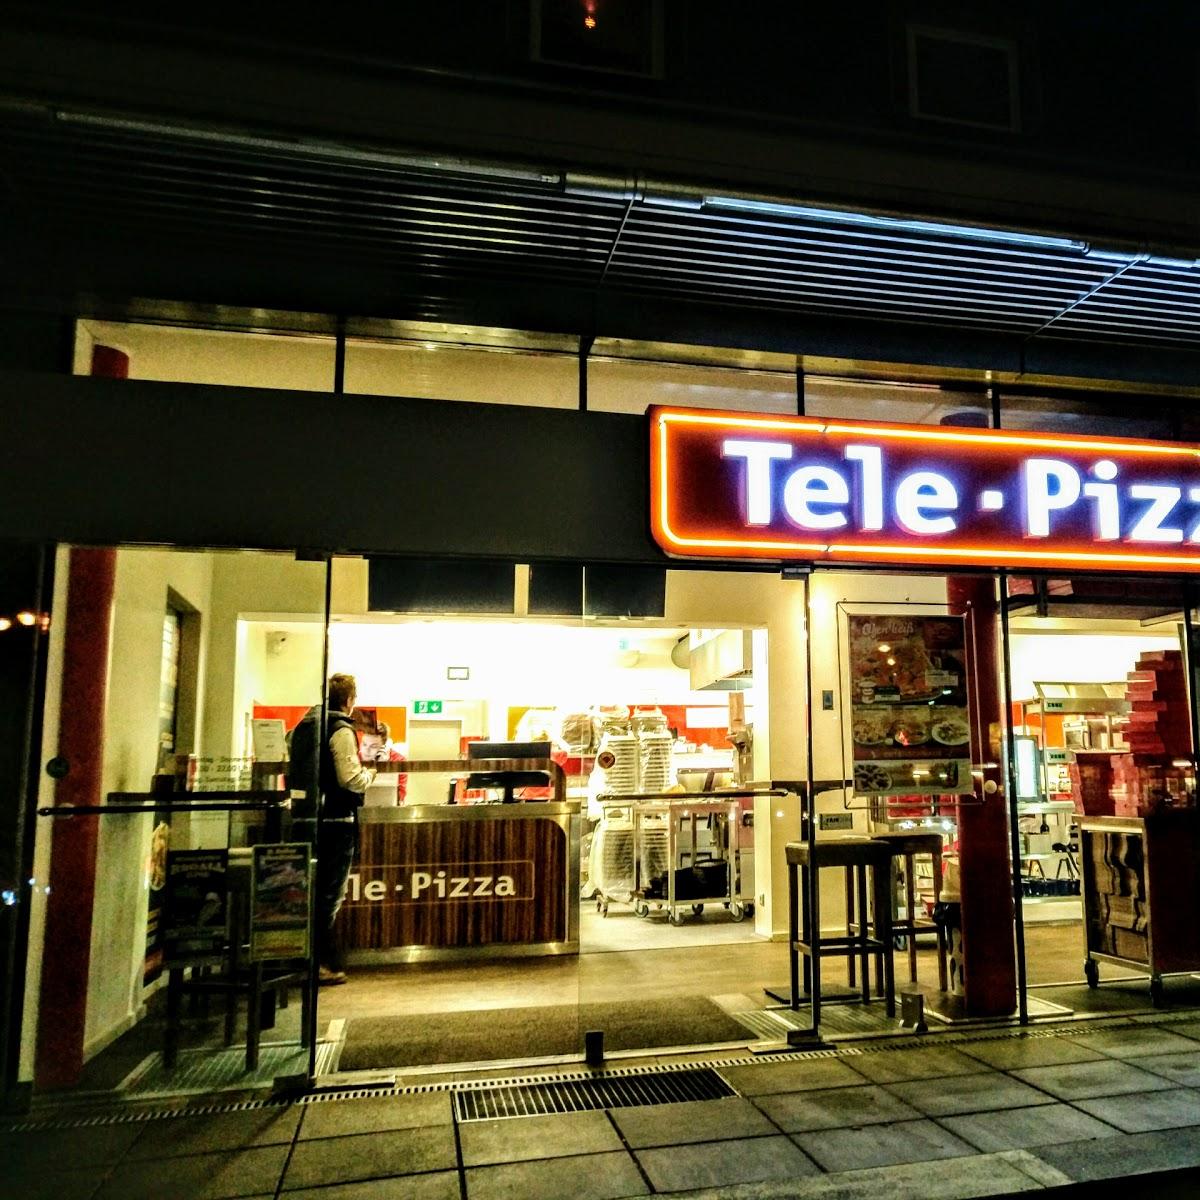 Restaurant "Tele Pizza" in Kleinmachnow